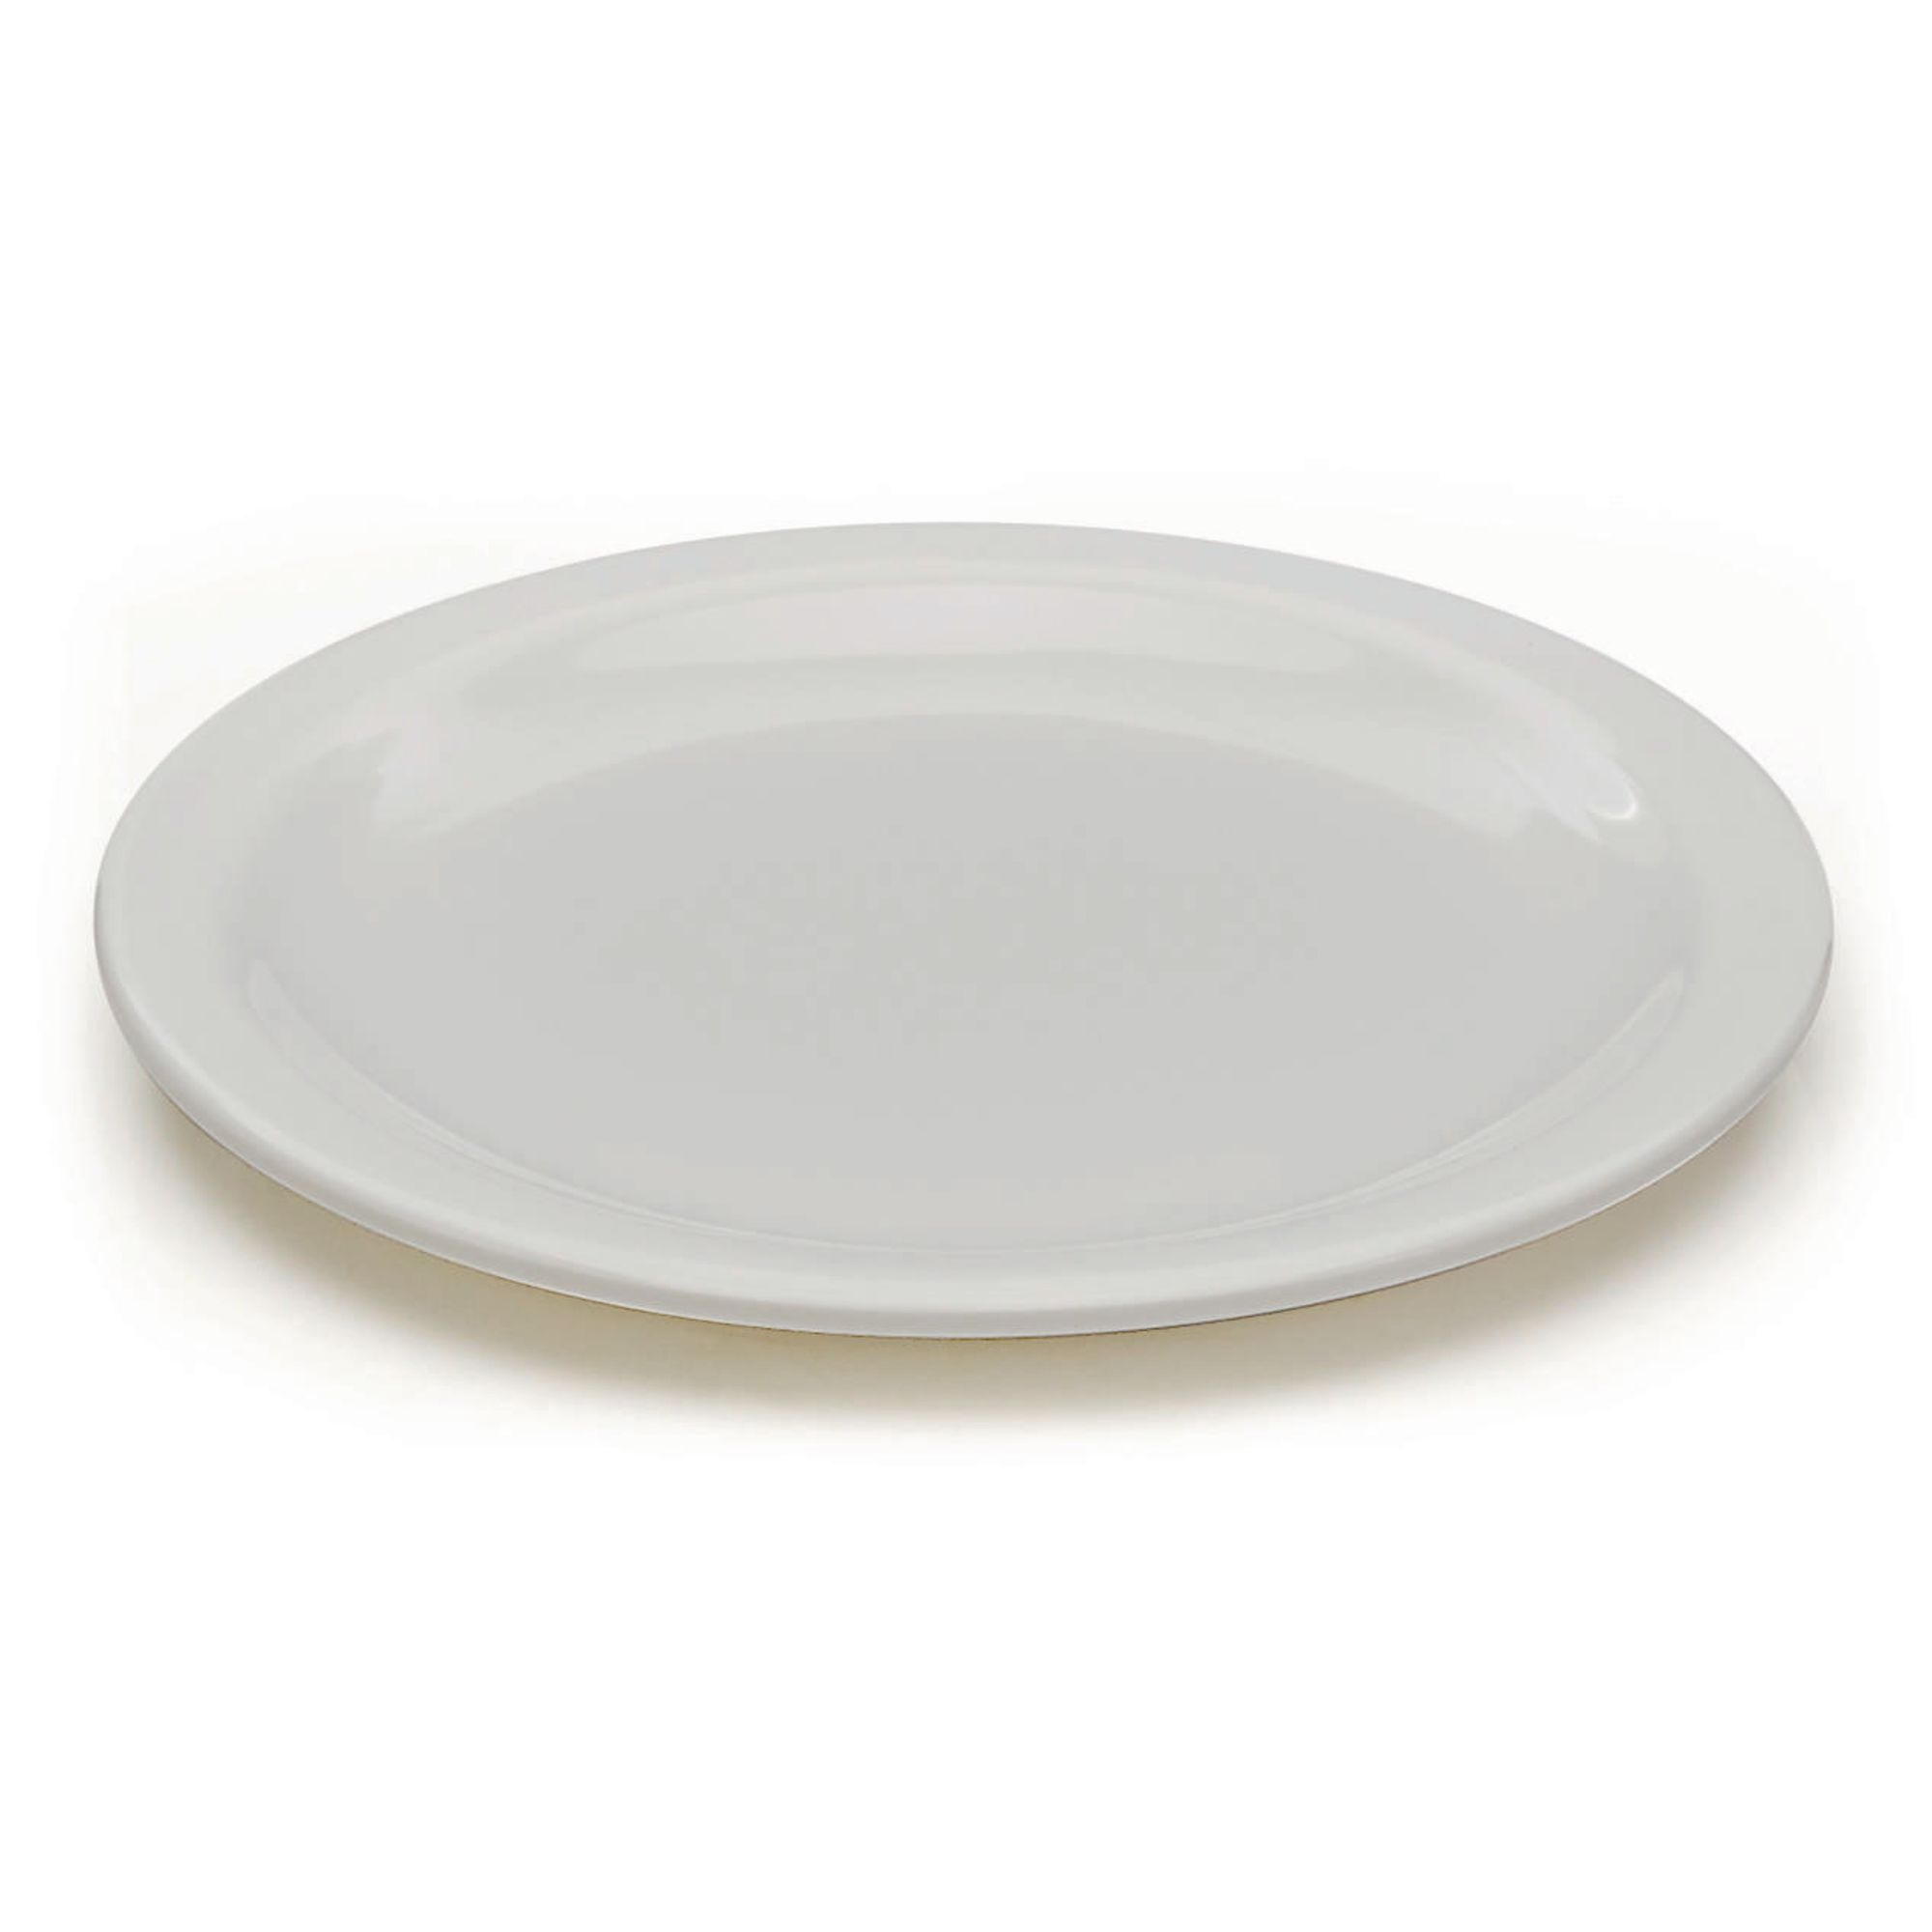 White Melamine Tableware - 165mm Plate